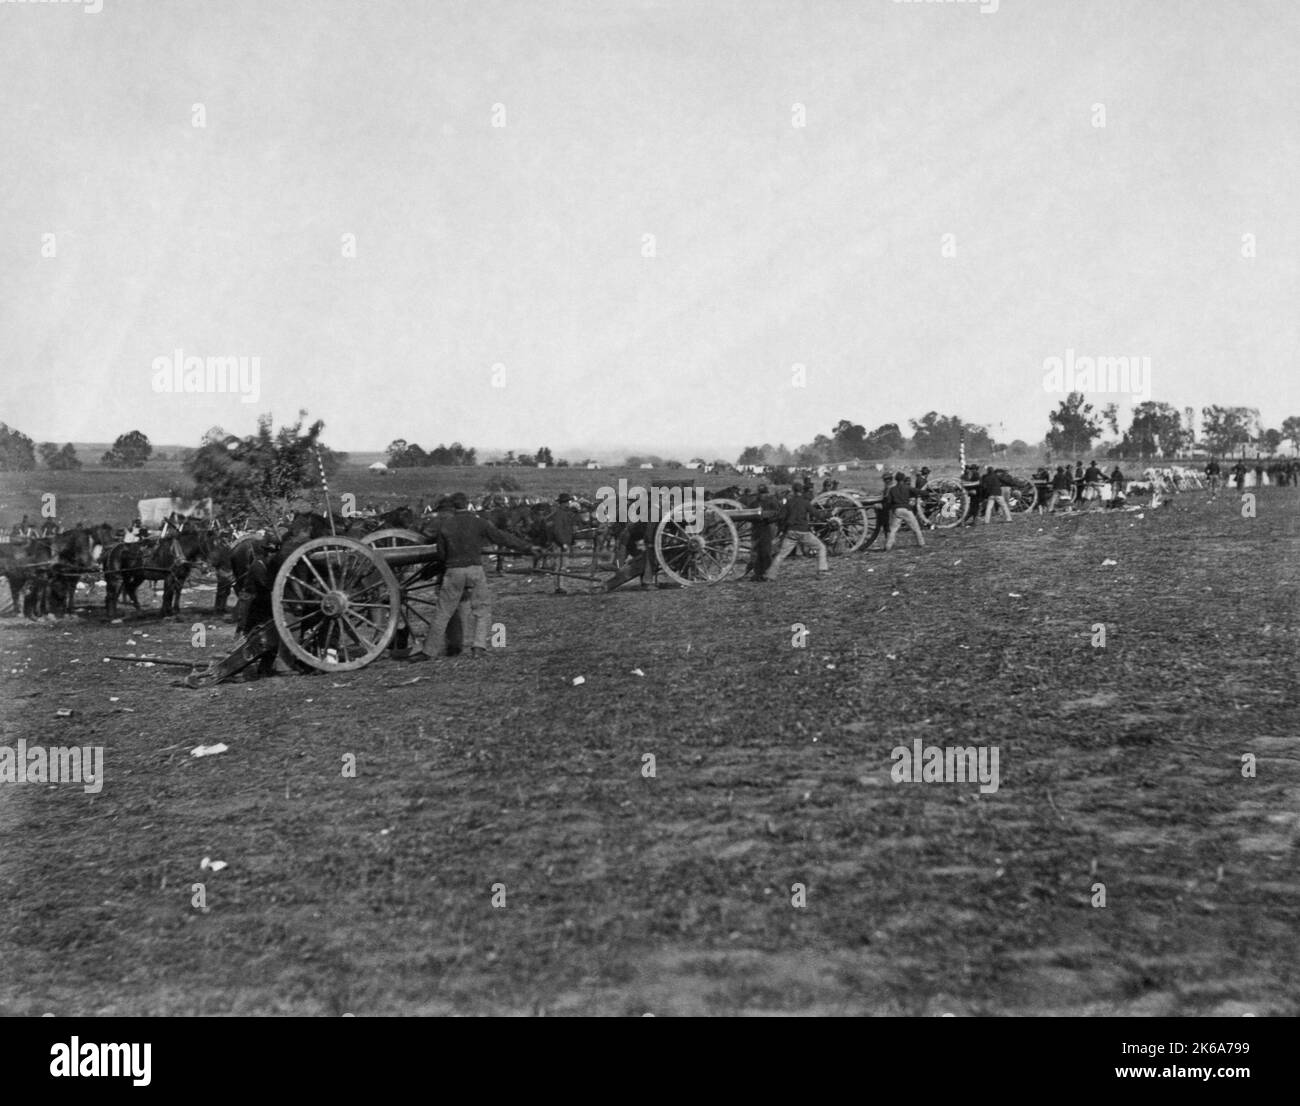 L'artillerie de l'Union s'est alignée sur une rangée de canons dans un champ, Fredericksburg, Virginie, 1862. Banque D'Images